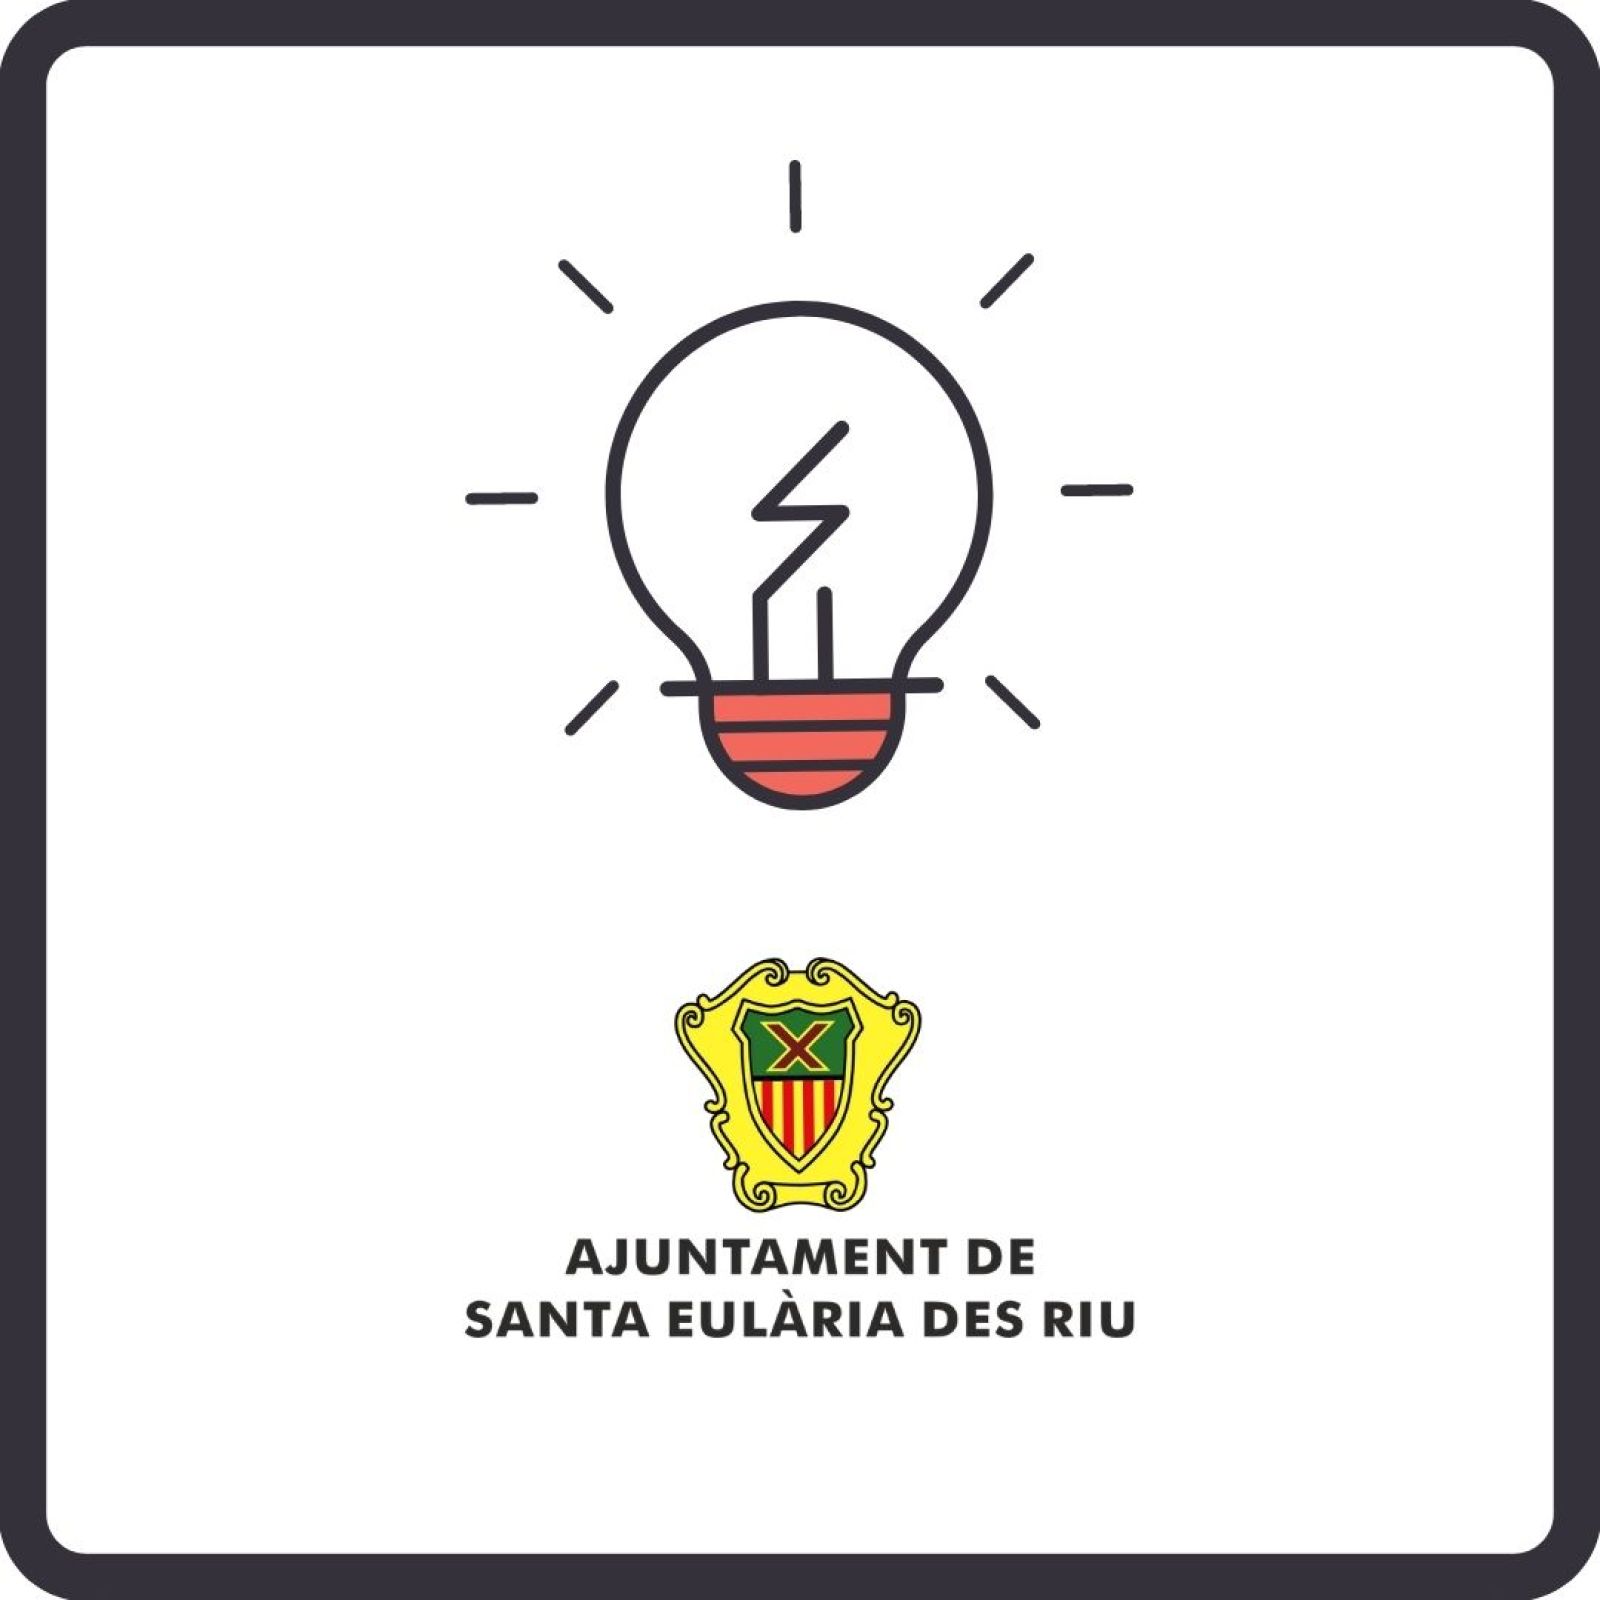 Corte temporal del suministro de energía eléctrica en diferentes zonas de Santa Eulària des Riu el día 16 de diciembre